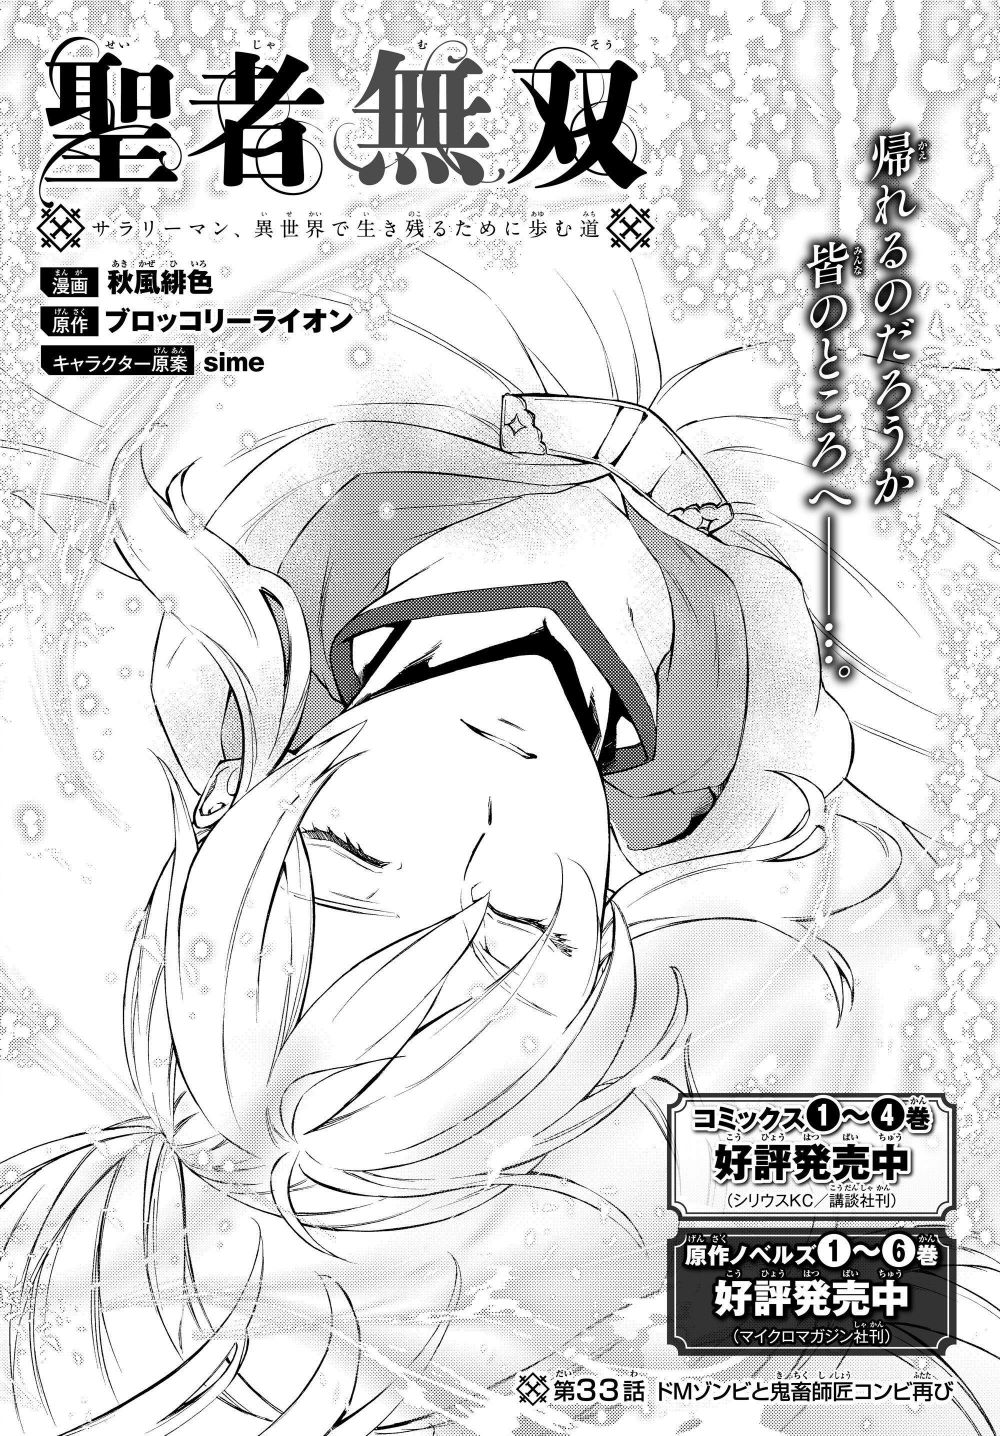 Seija Musou: Salaryman, Isekai De Ikinokoru Tame Ni Ayumu Michi - chapter 33 - #2